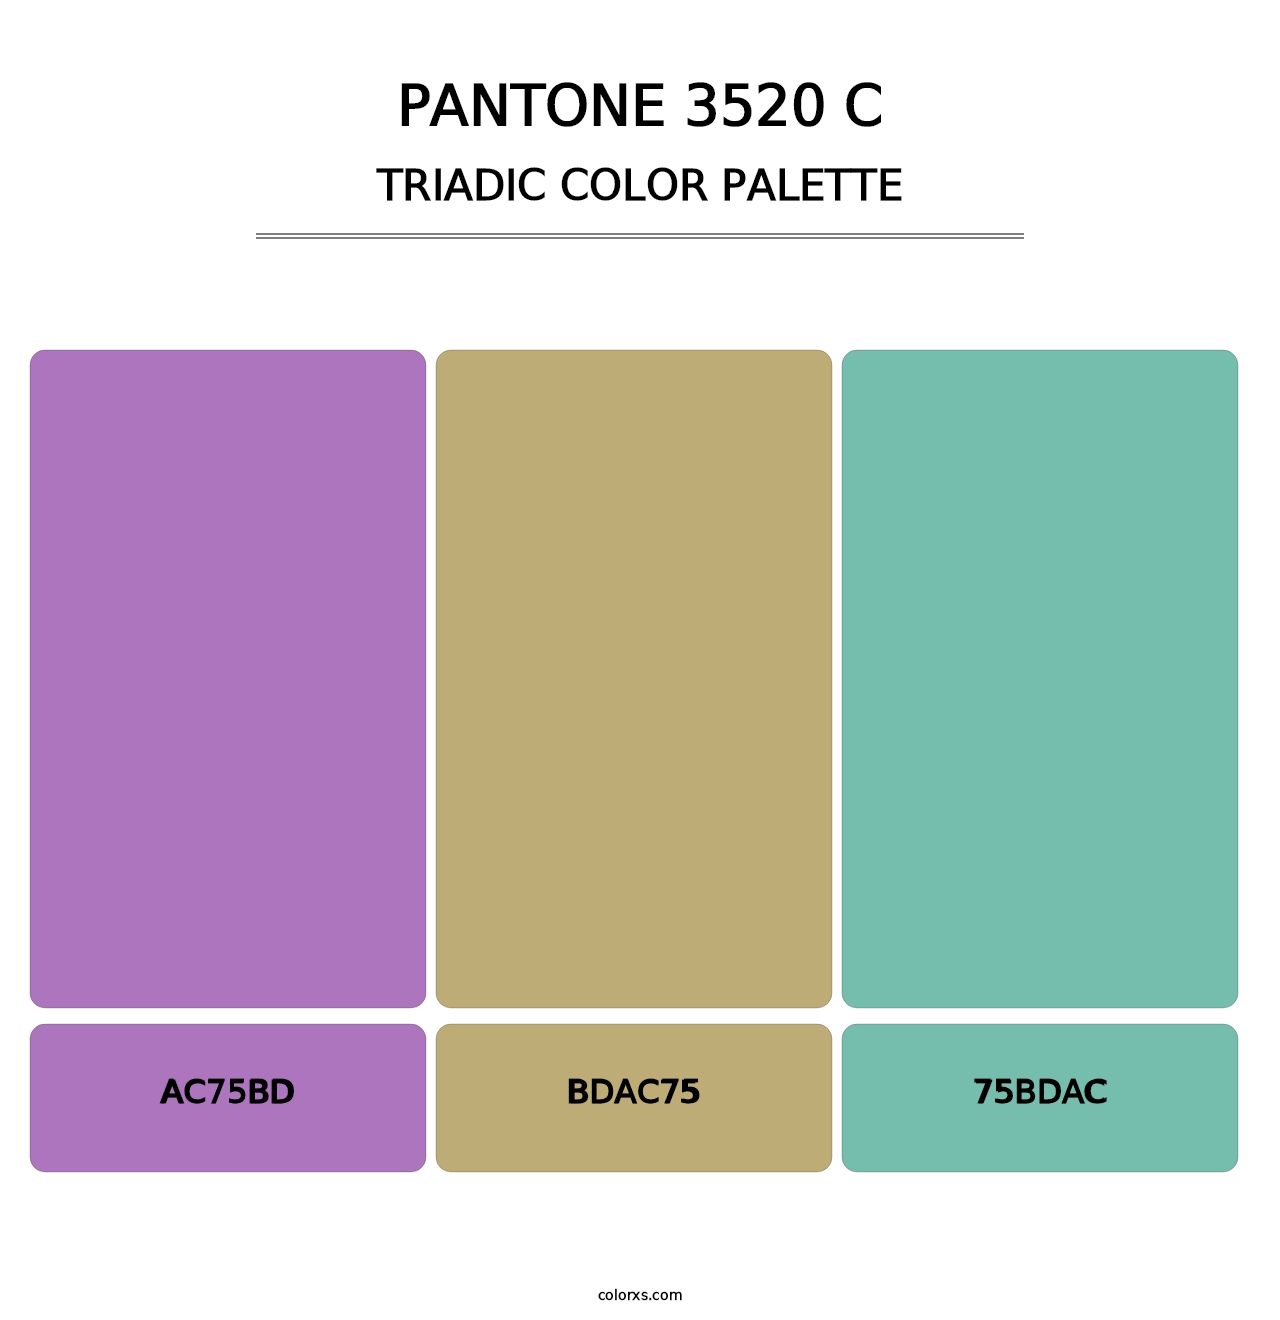 PANTONE 3520 C - Triadic Color Palette